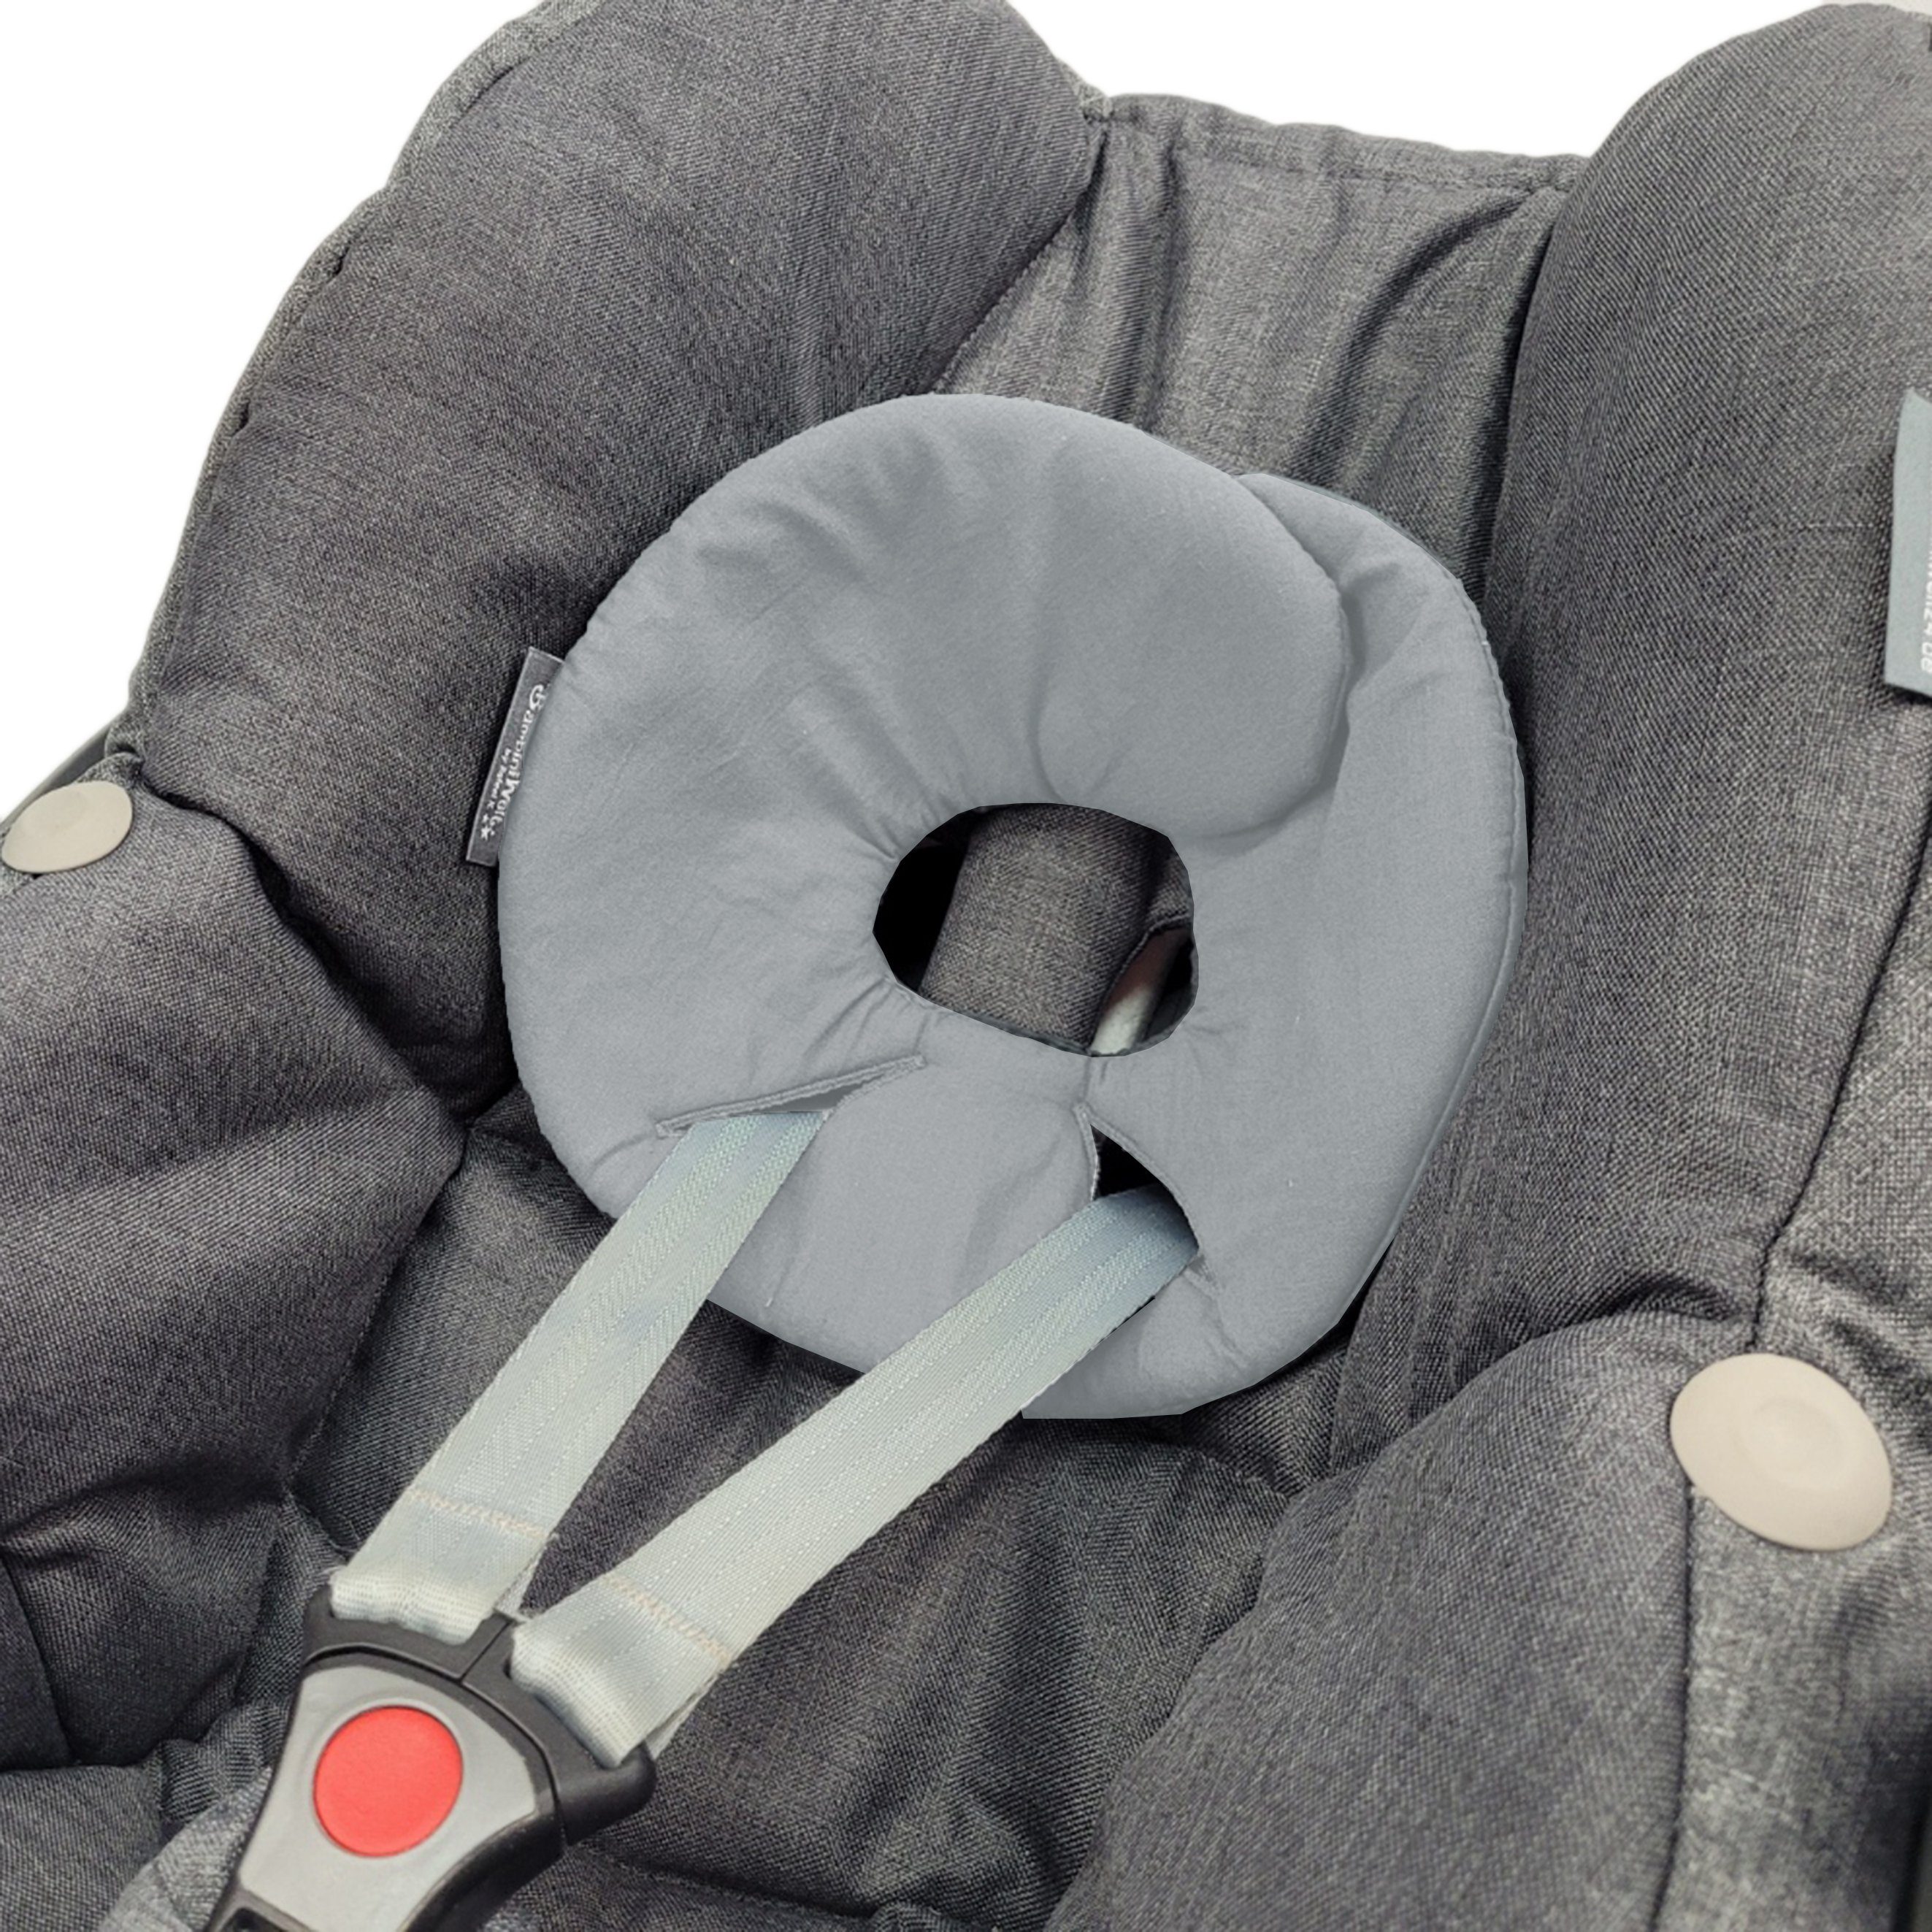 BambiniWelt by Rafael K. Babyschale Kopfpolster für Babyschale kompatibel mit Maxi-Cosi Pebble/Pebble Plus, ab: Geburt, bis: bis ca. 14 Monate Baumwolle hellgrau